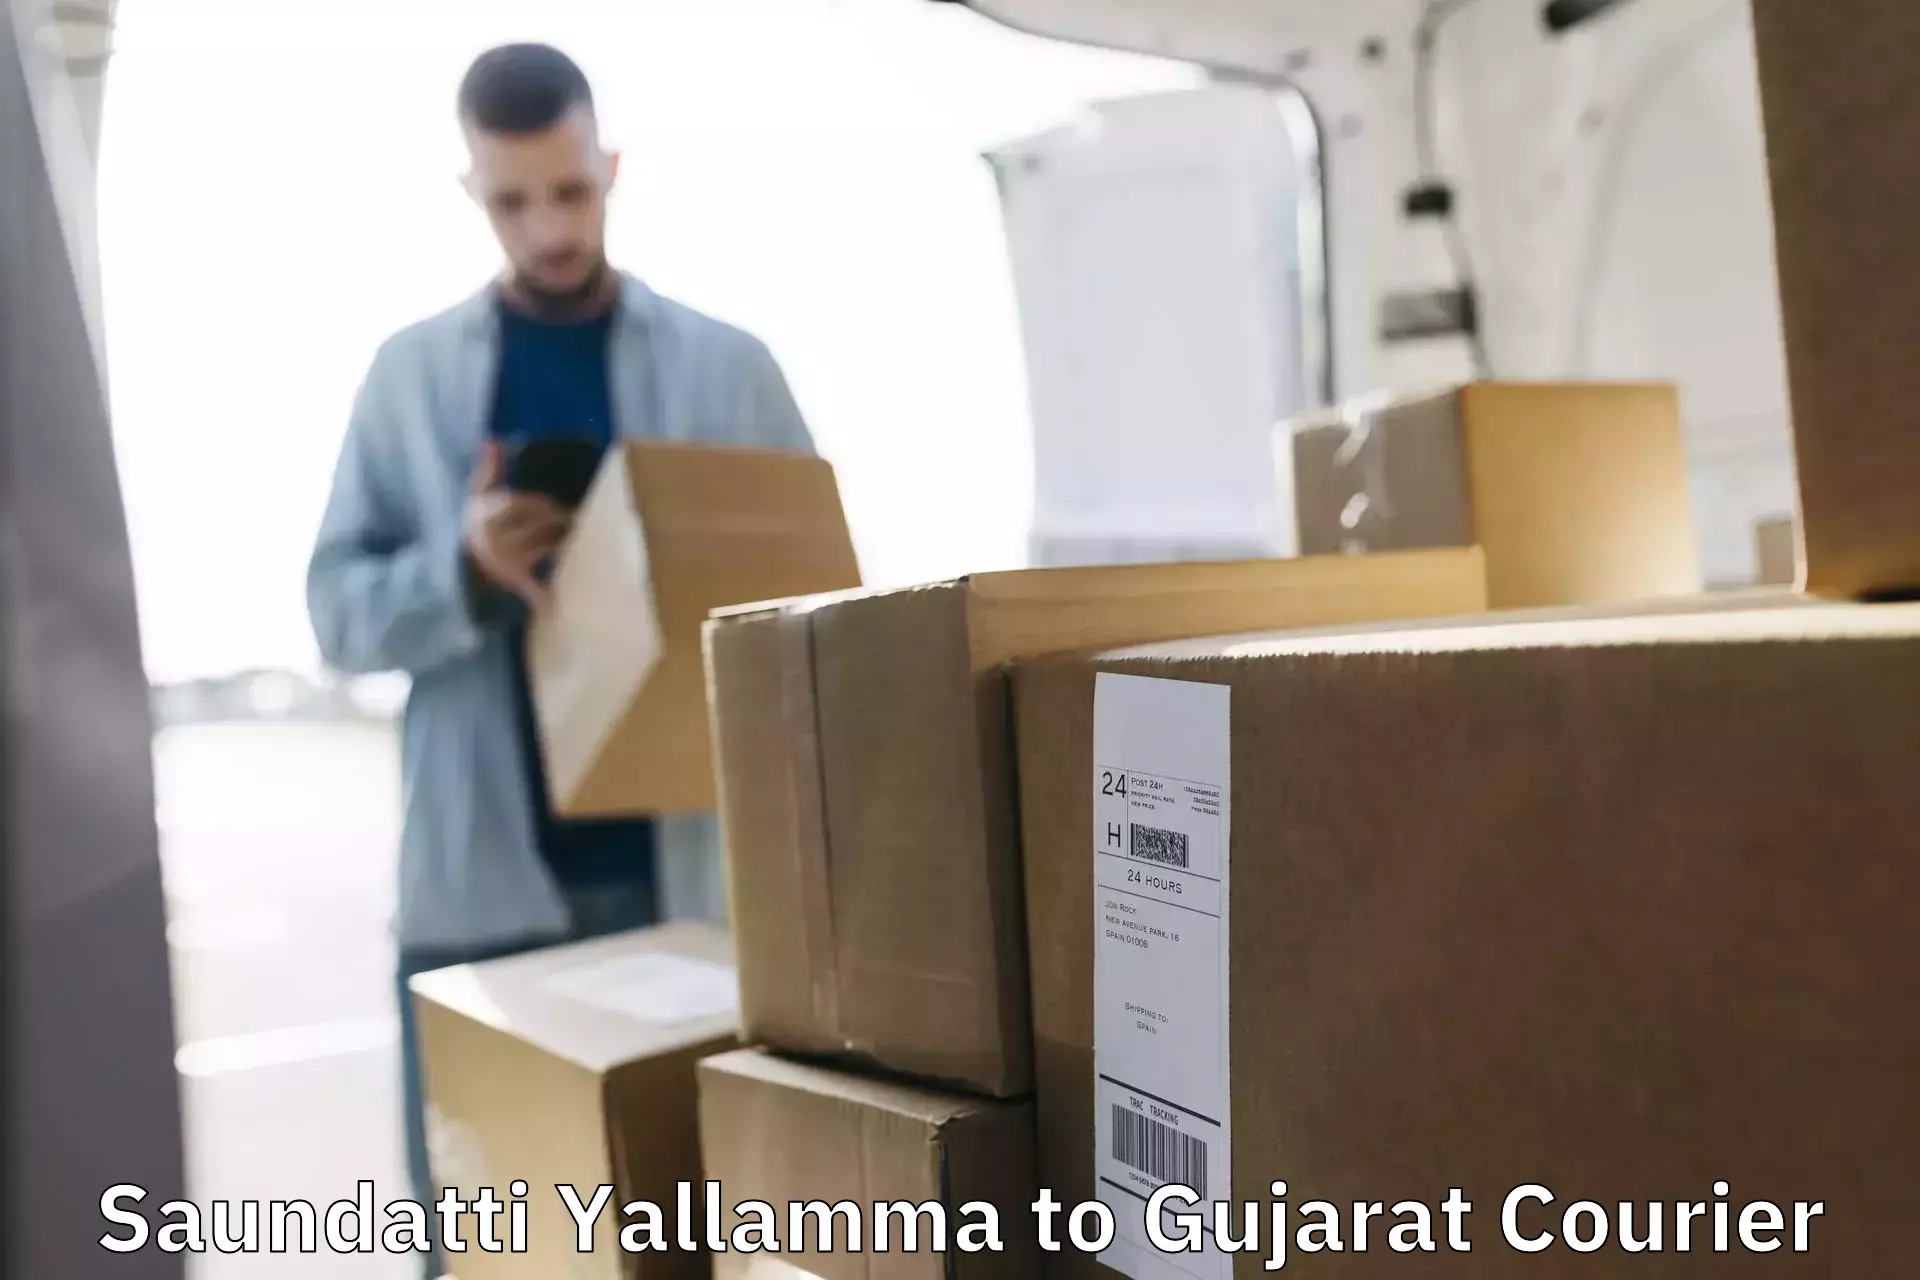 High-quality delivery services Saundatti Yallamma to Navsari